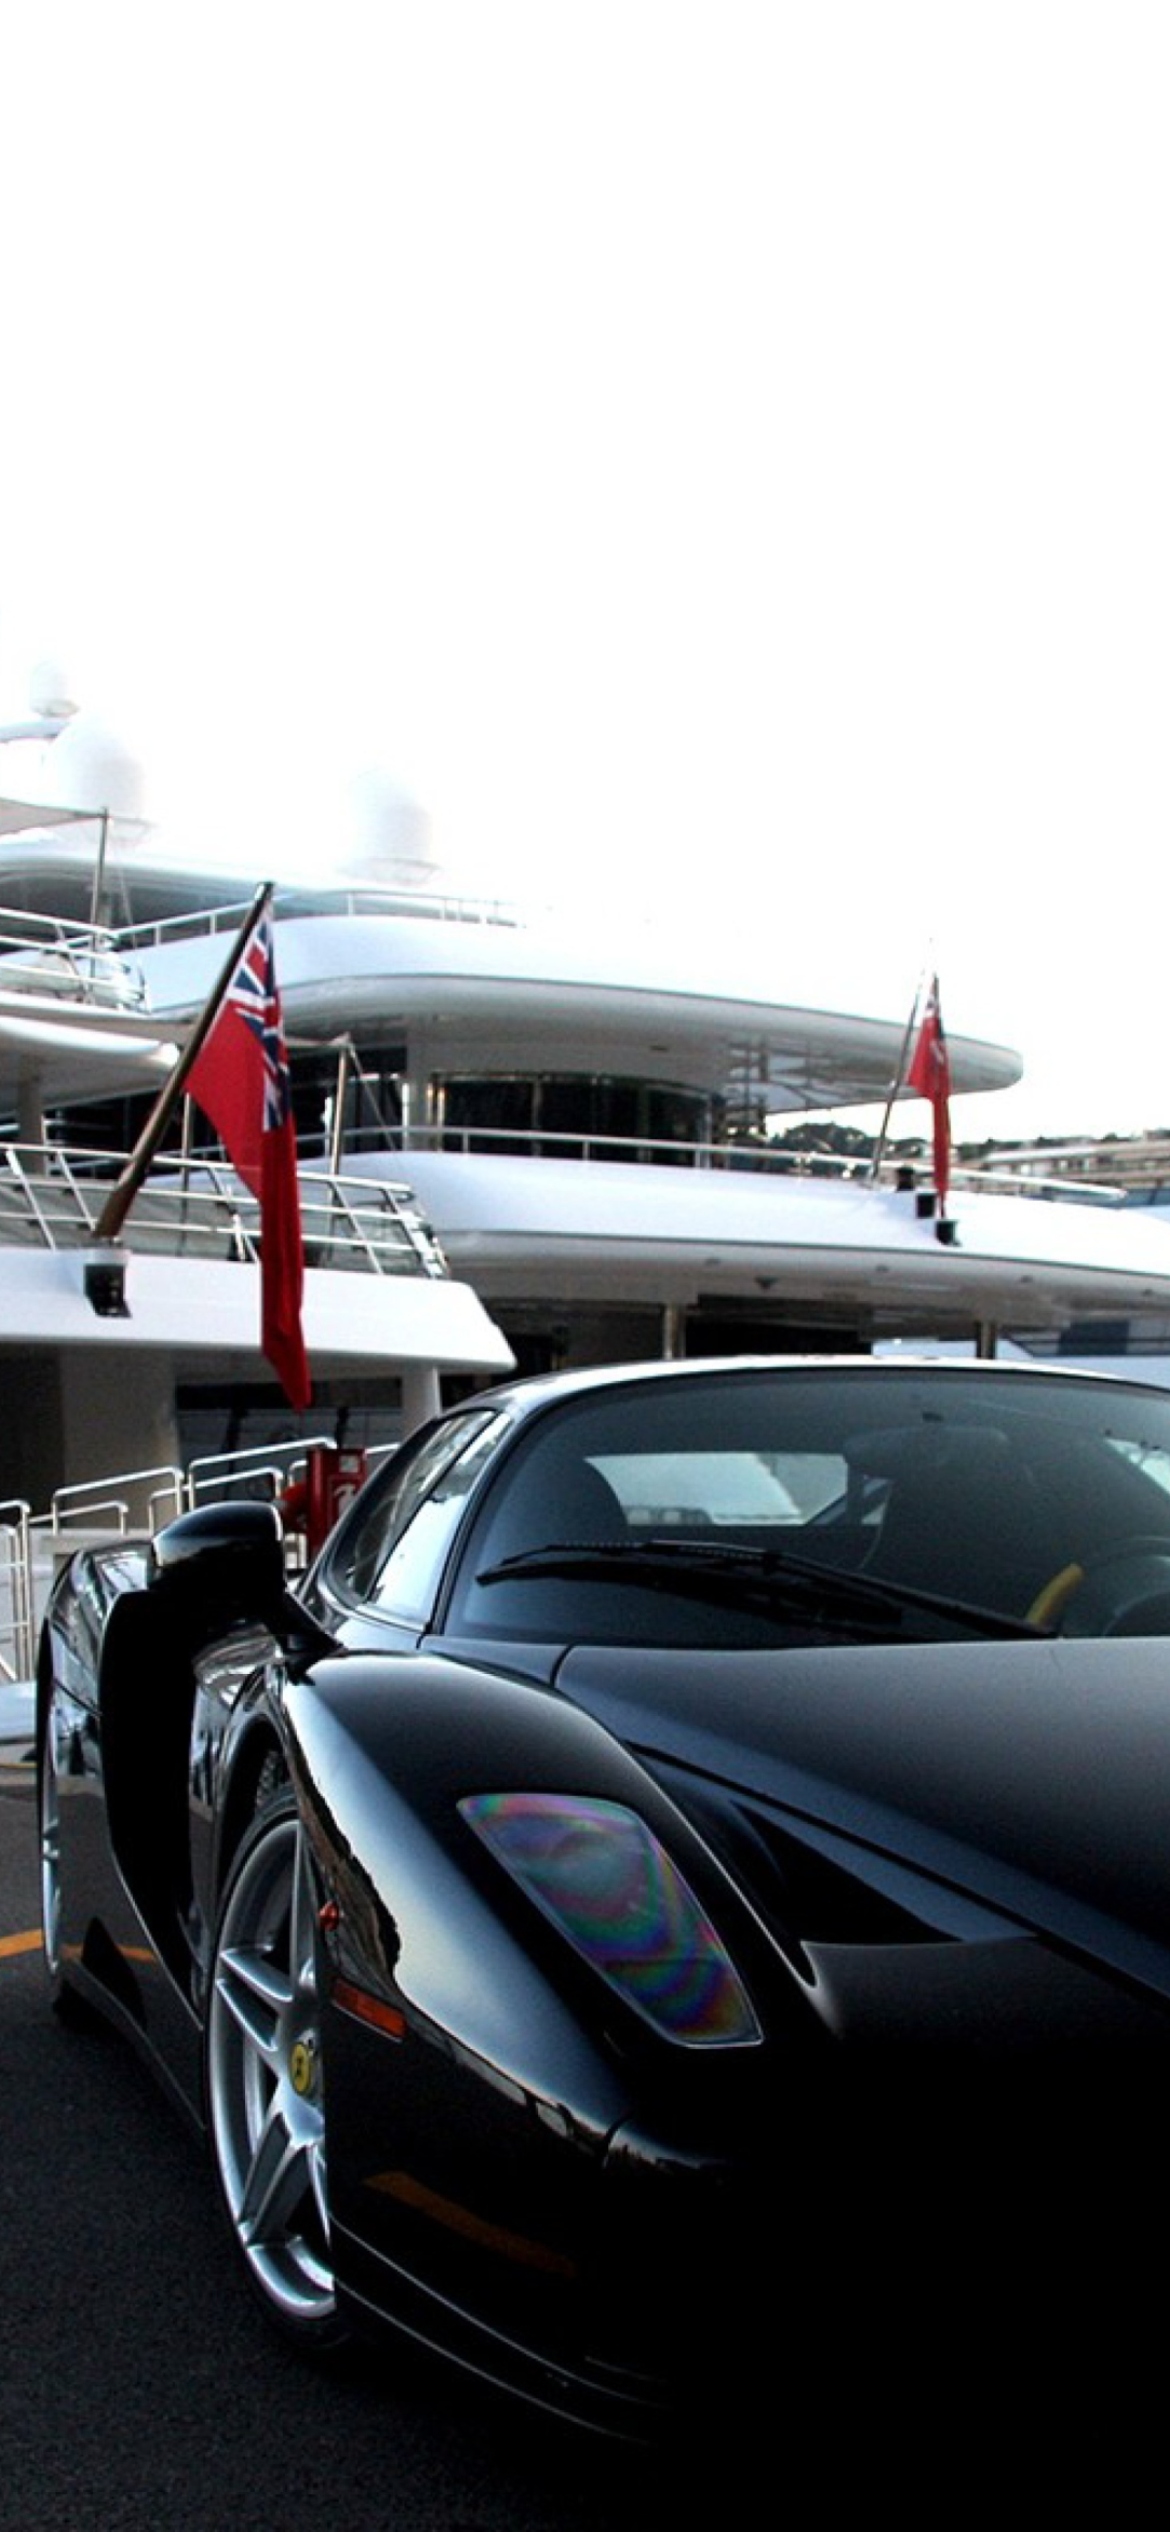 Обои Cars Monaco And Yachts 1170x2532